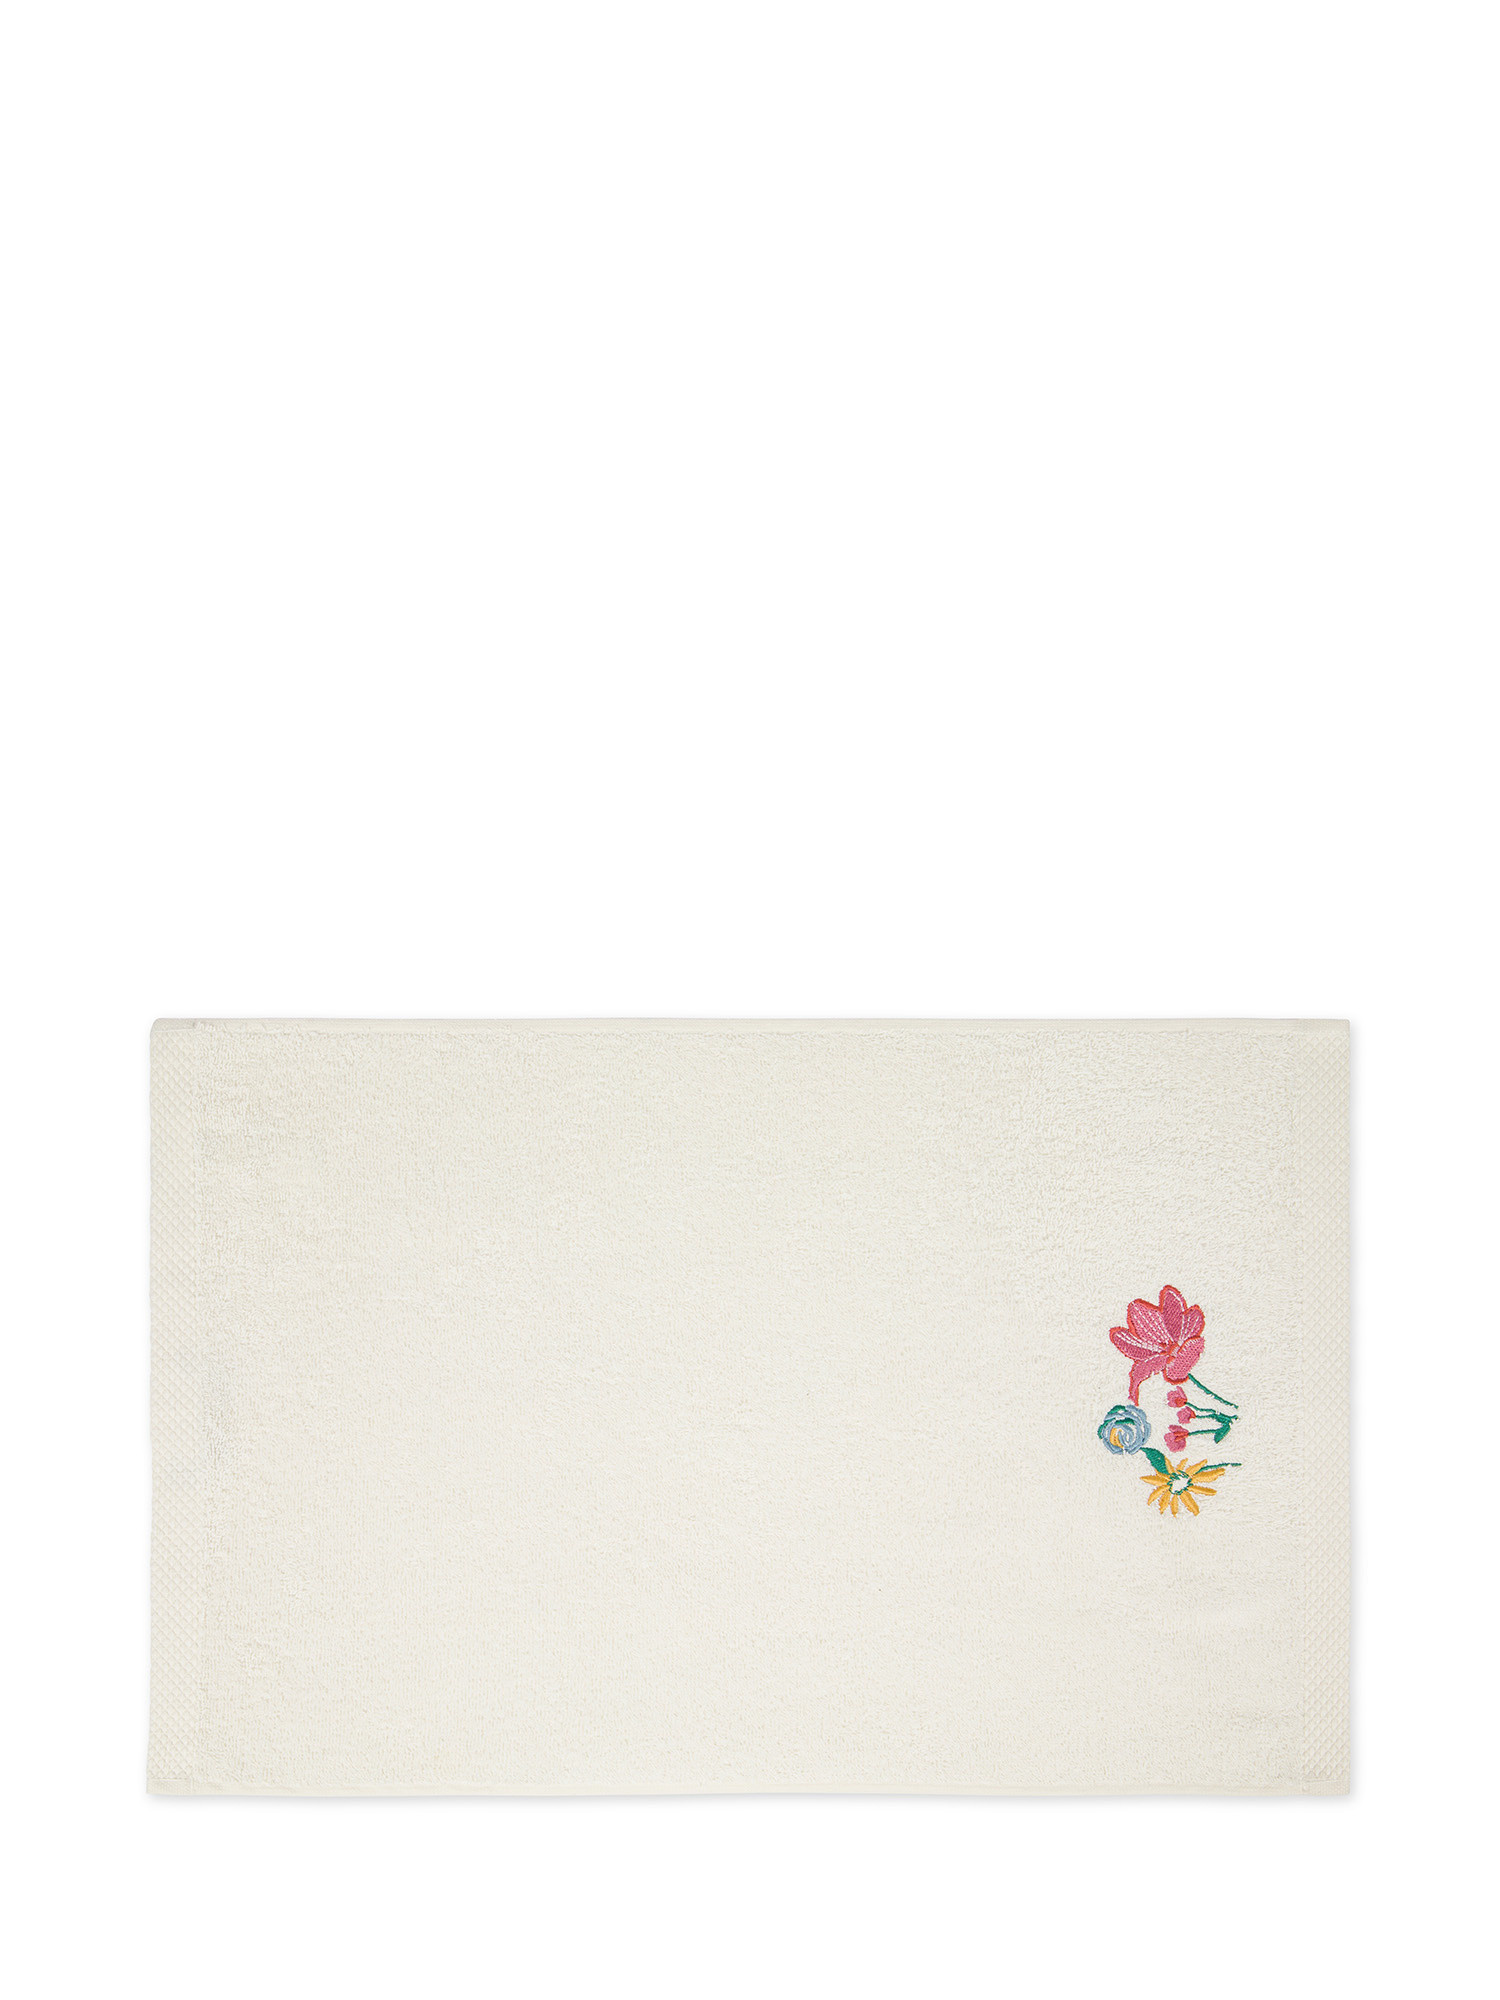 Asciugamano in spugna di cotone con ricamo floreale, Multicolor, large image number 1